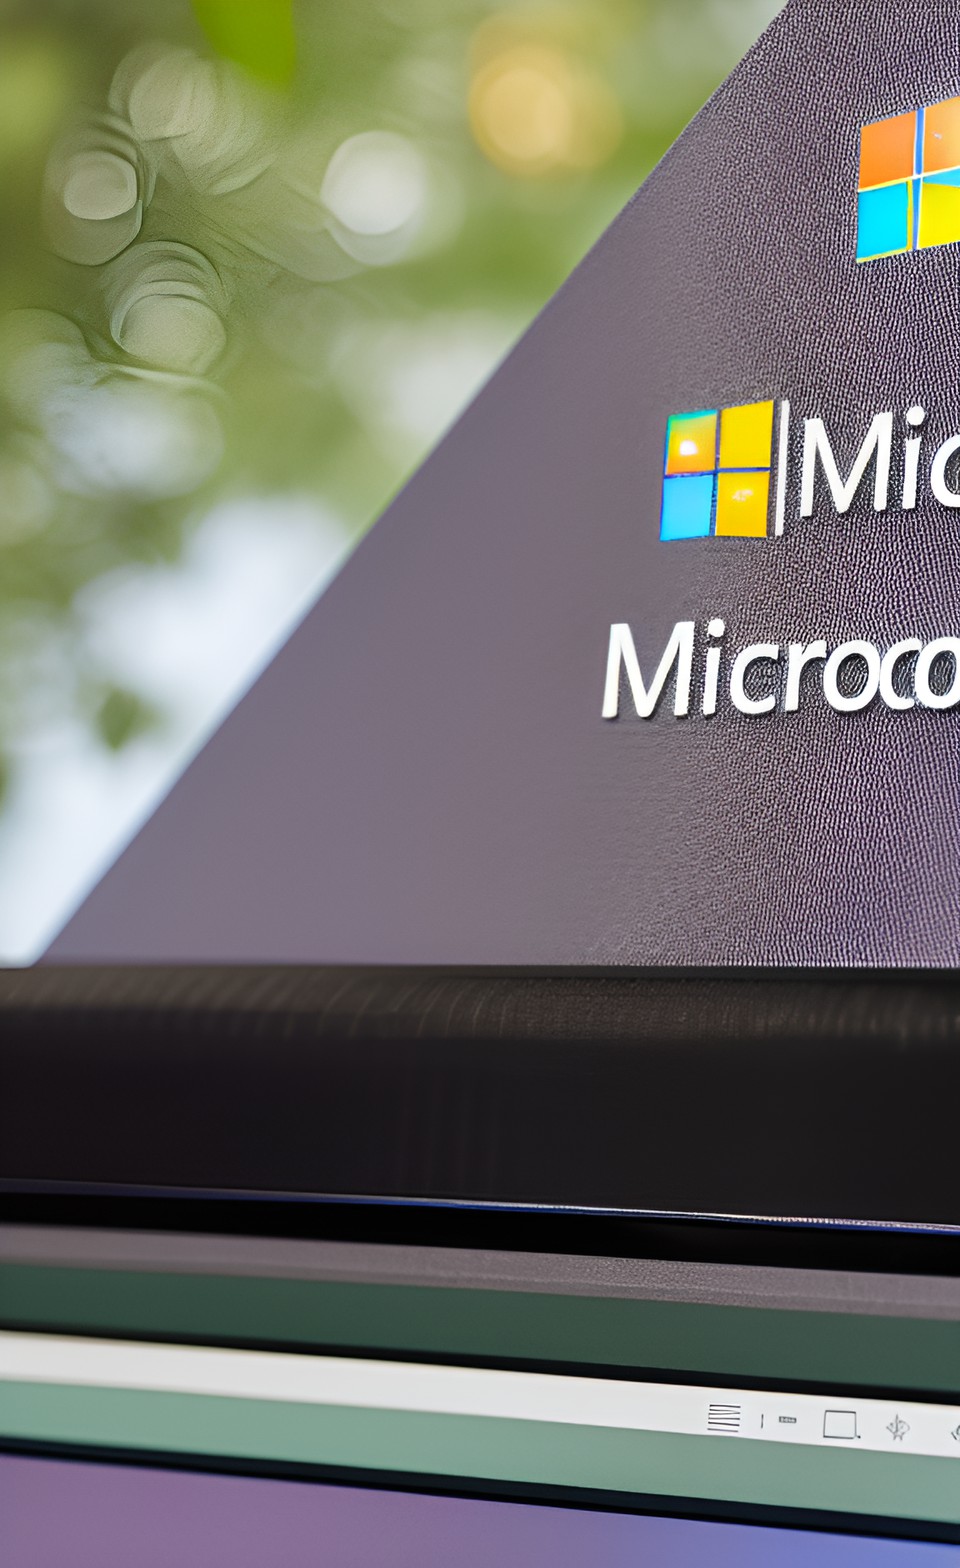 Microsoft inizia a mostrare annunci a schermo intero sull'approssimarsi della fine del supporto per Windows 10